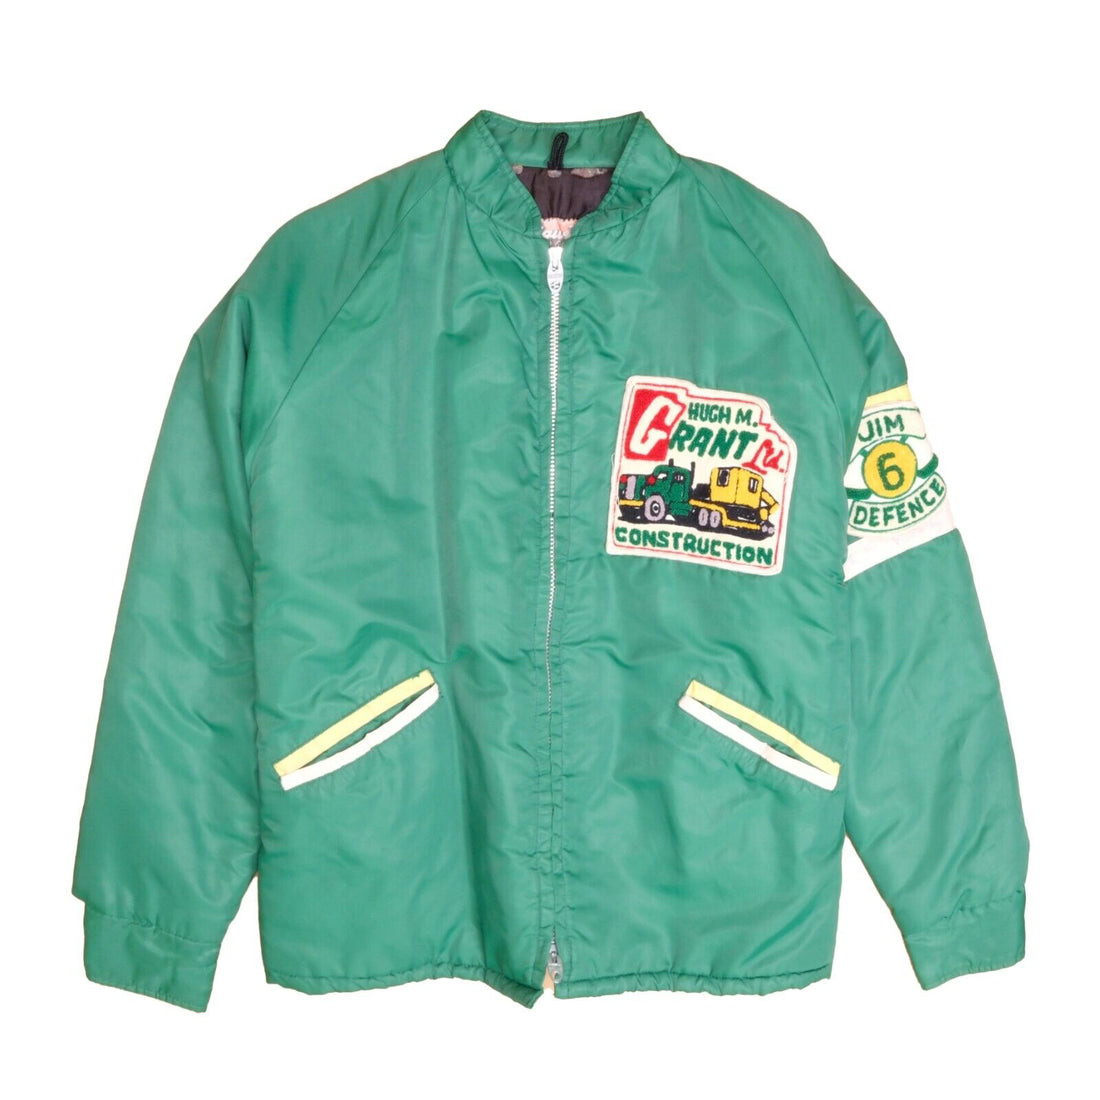 Vintage Hugh Grant Construction Jacket Size Large Green Lightning Zip